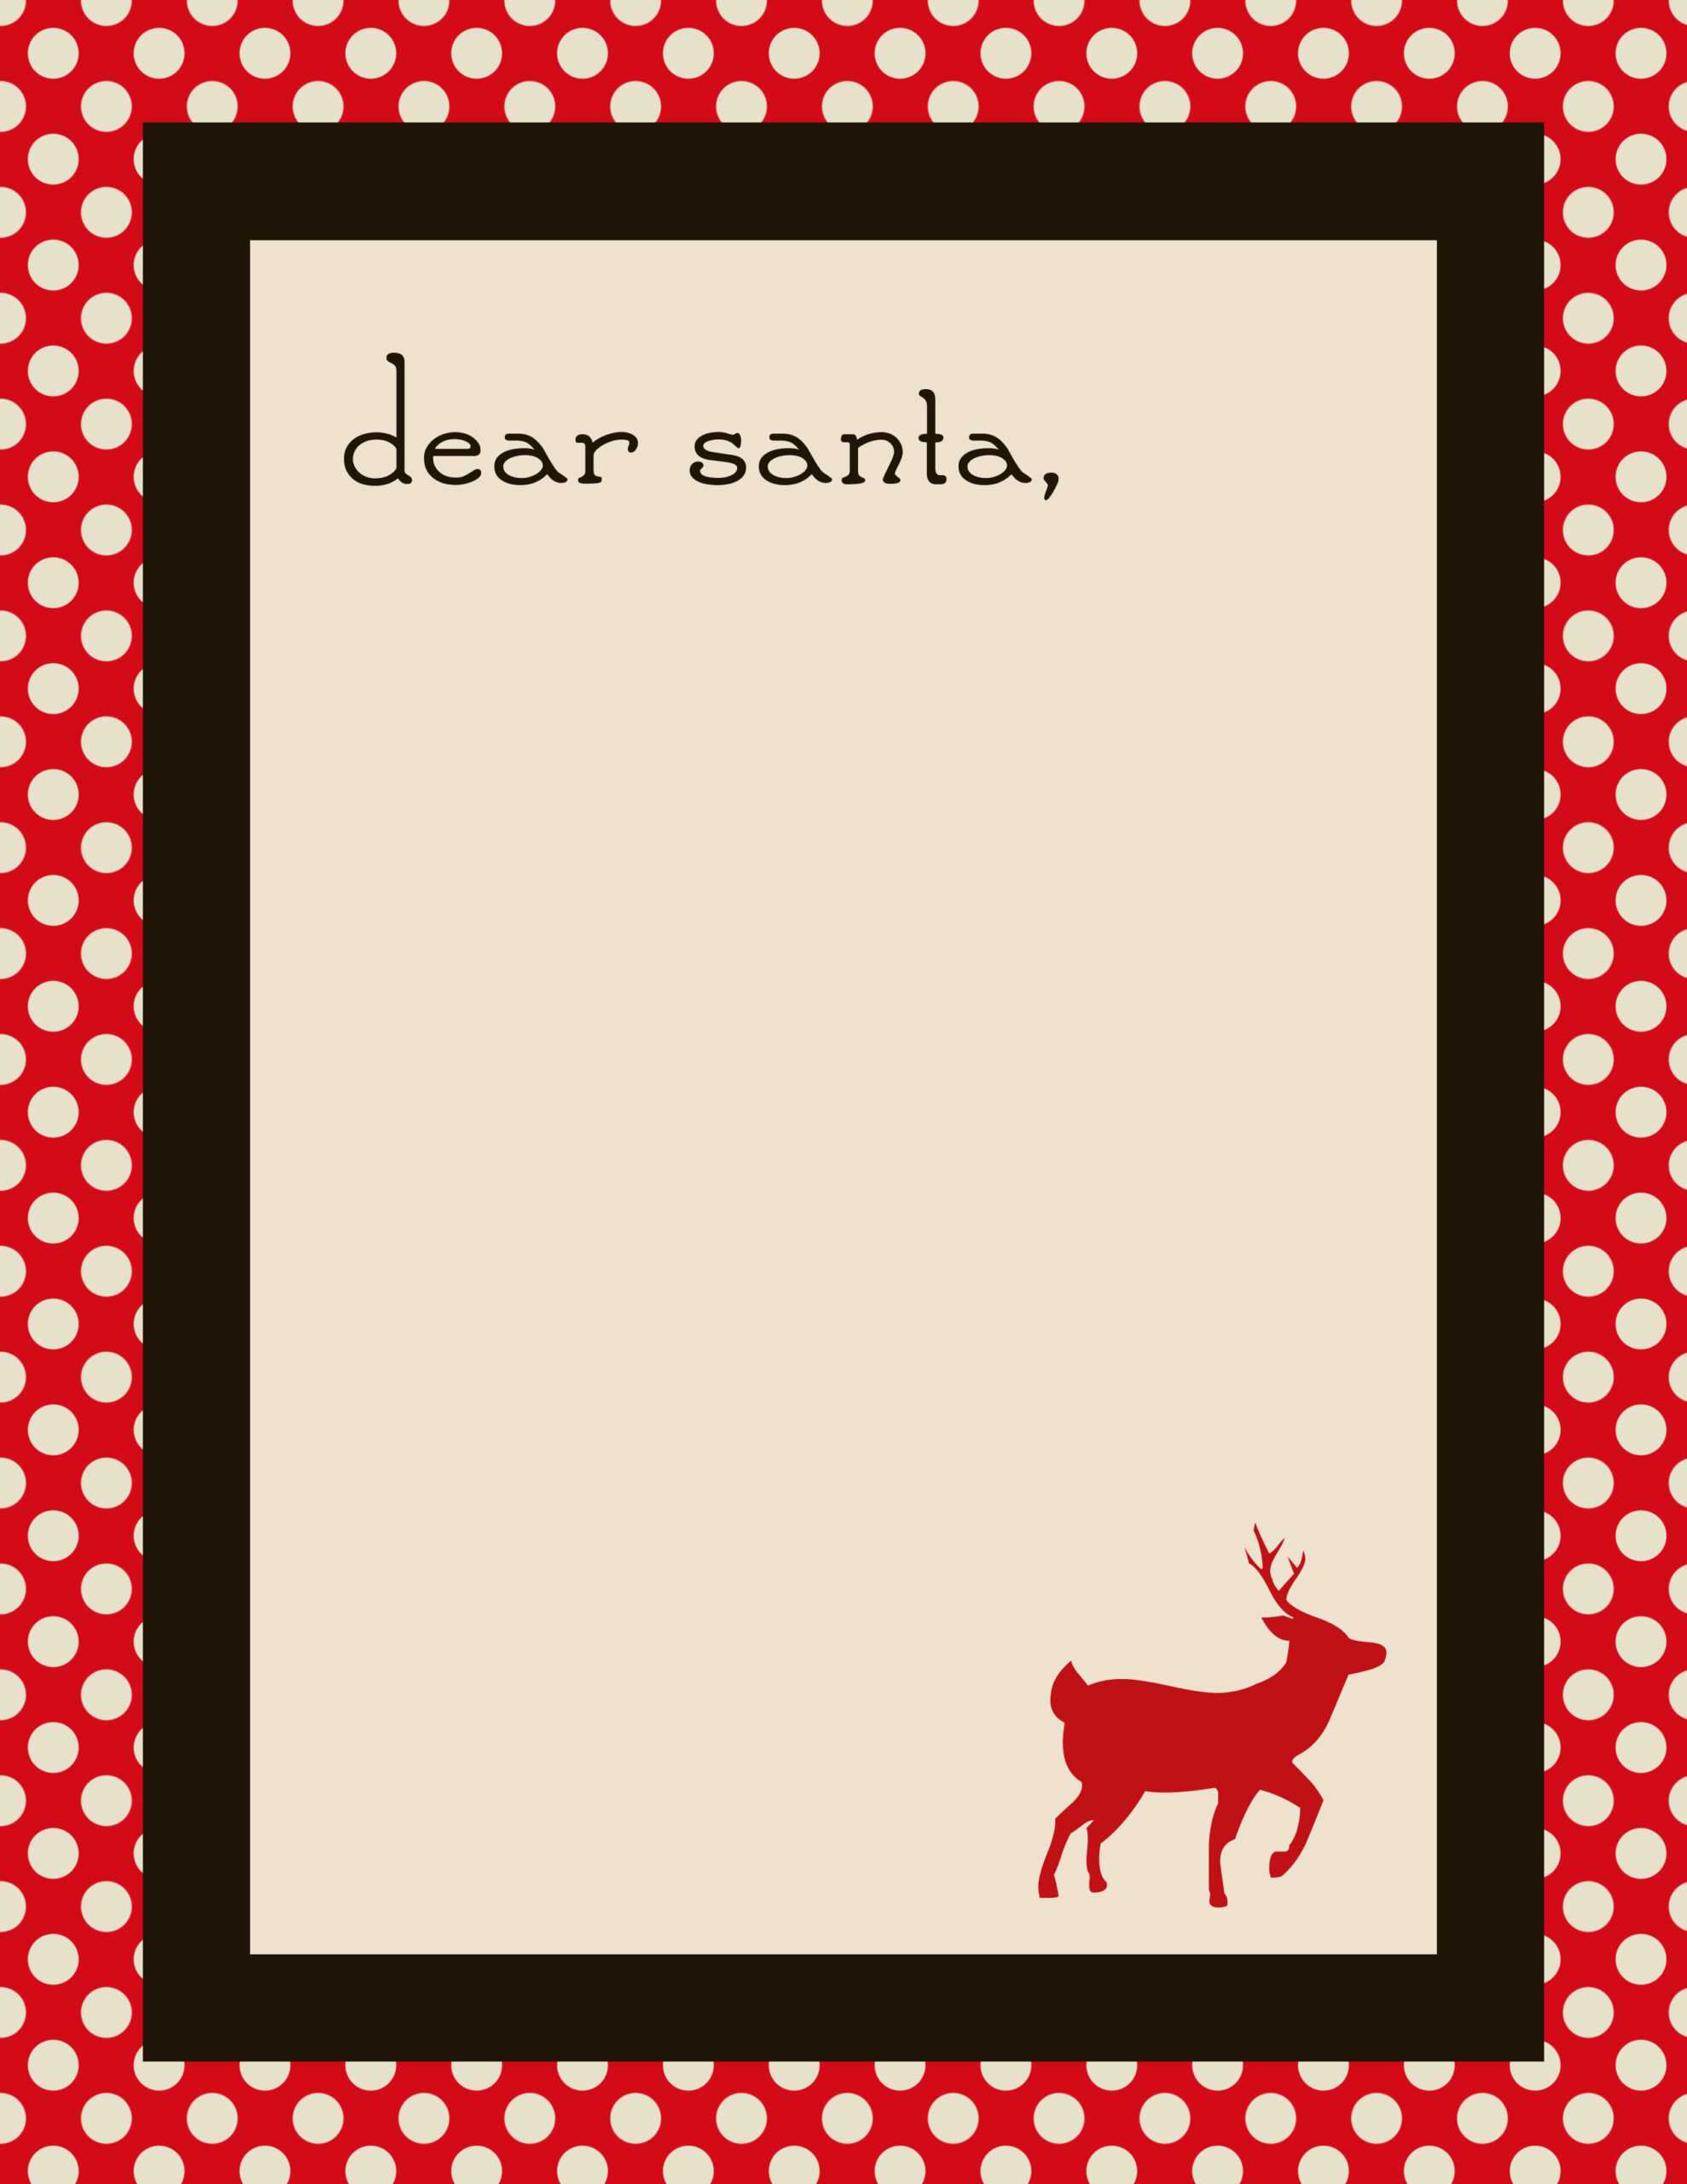 Free Santa Letter Templates | Oldsaltfarm Intended For Santa Letter Template Word